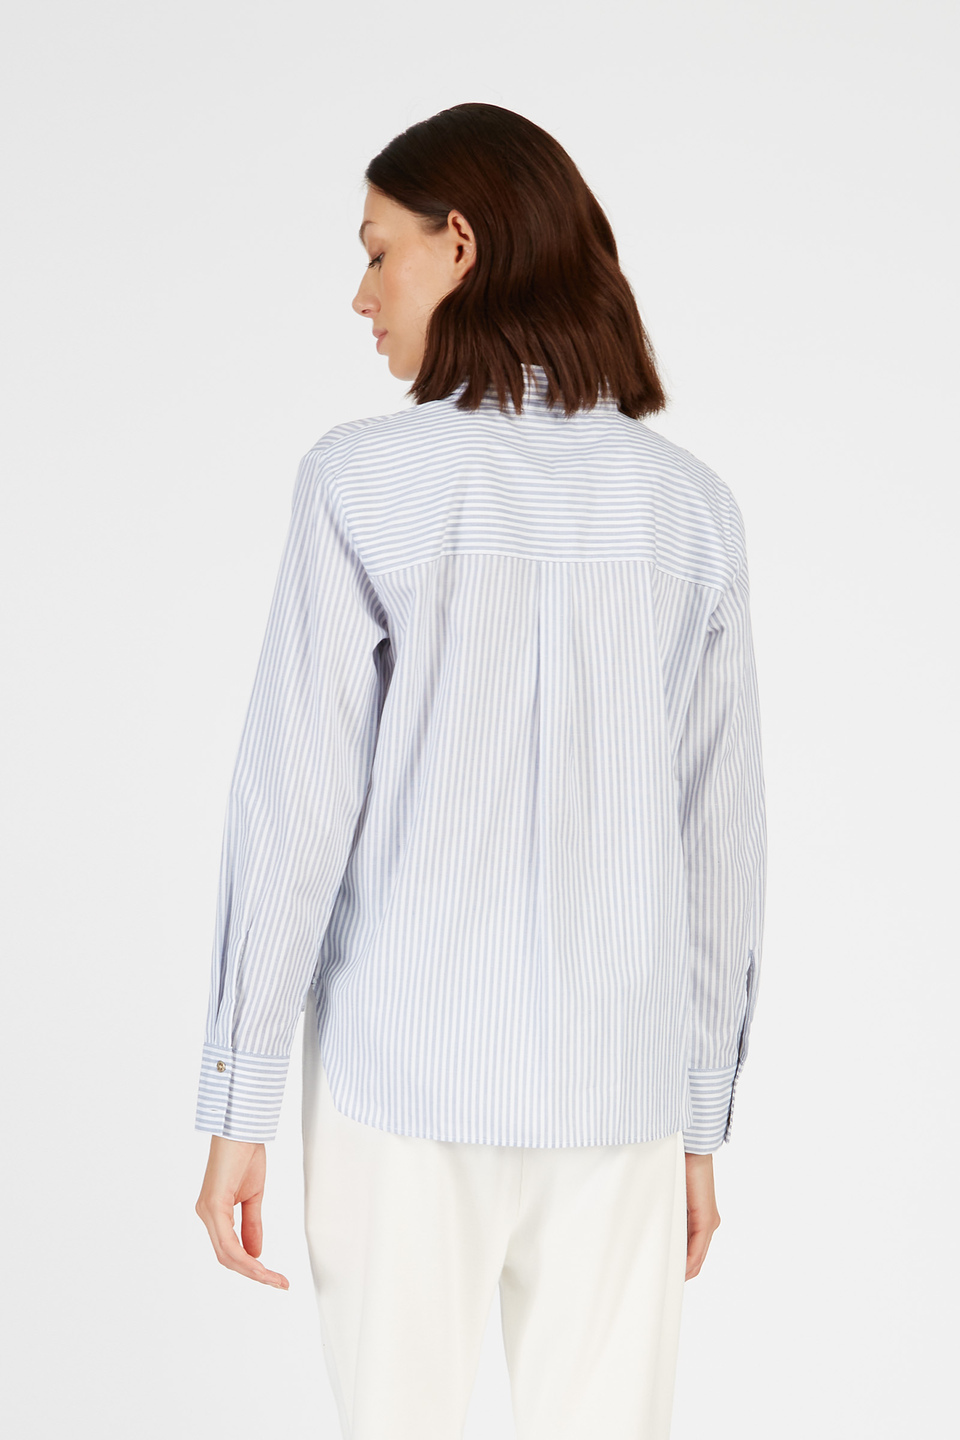 Striped-coloured cotton shirt | La Martina - Official Online Shop